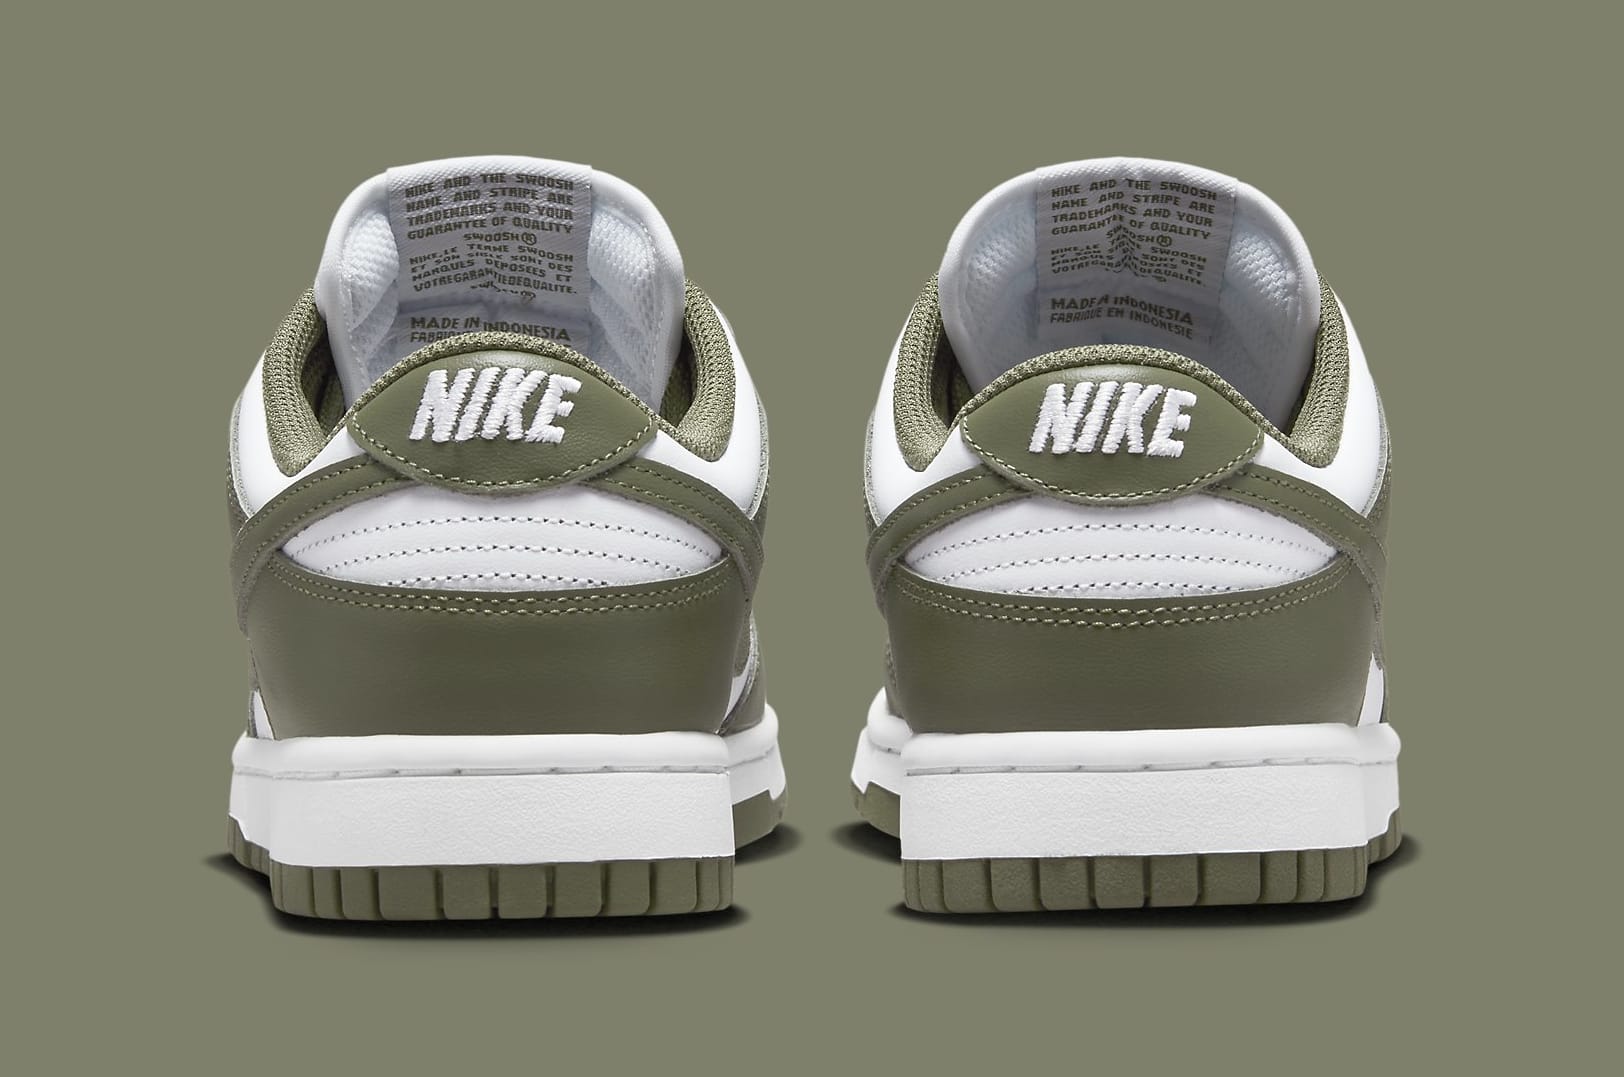 Medium Olive' Nike Dunk Releases in September